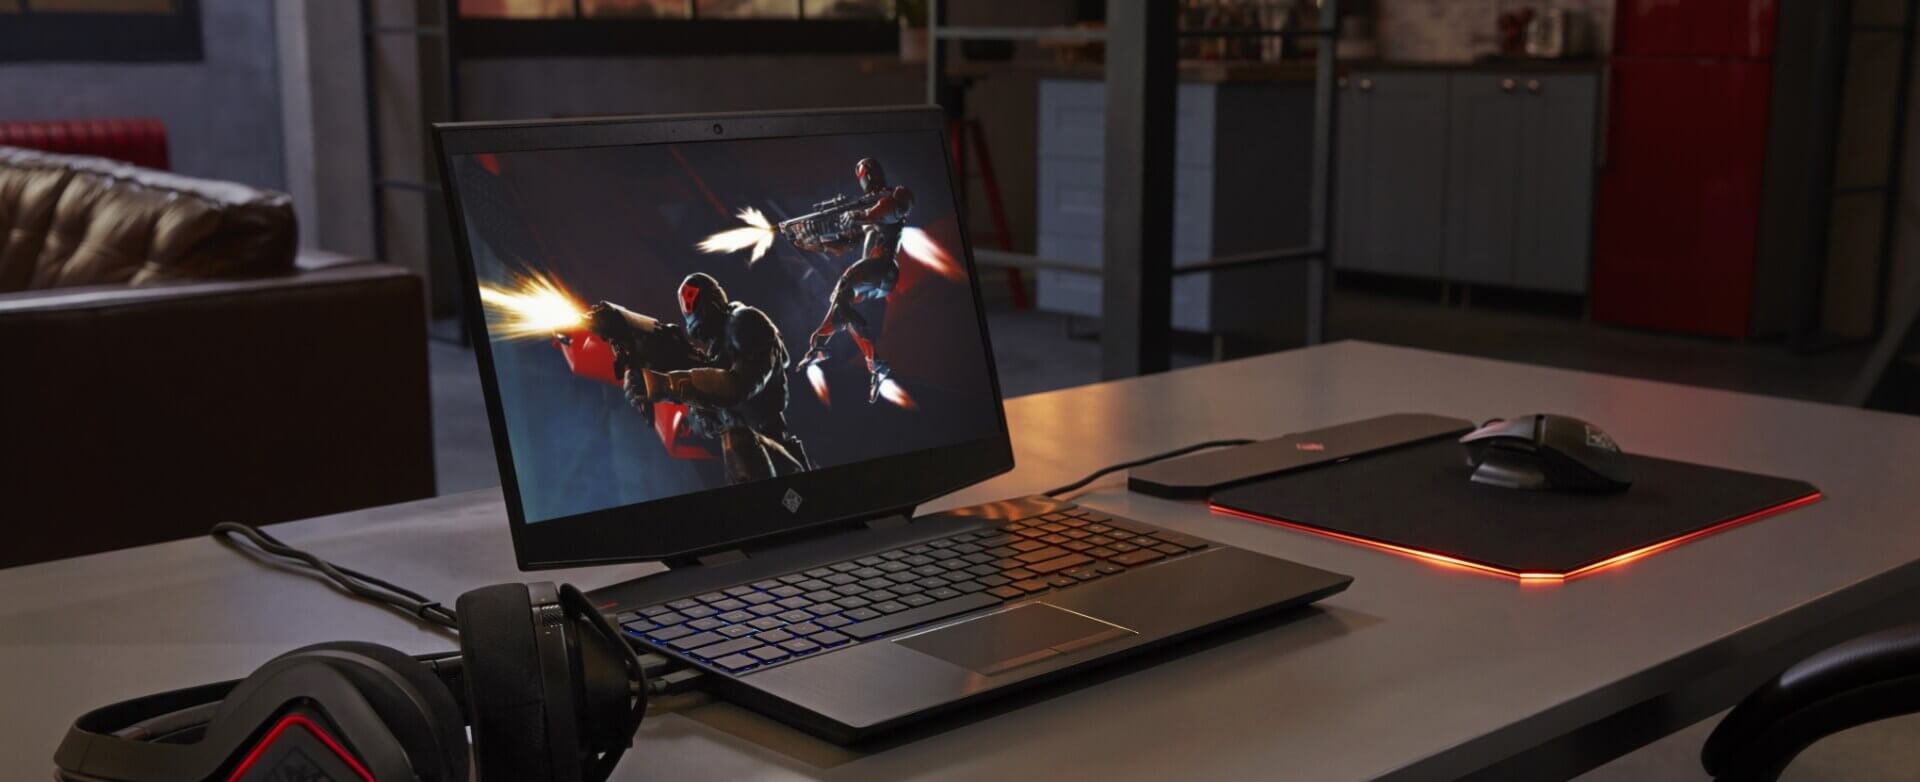 omen-15-ek0044tx-laptop-gaming-powerful-dan-inovatif-dari-hp-with-intel-processor